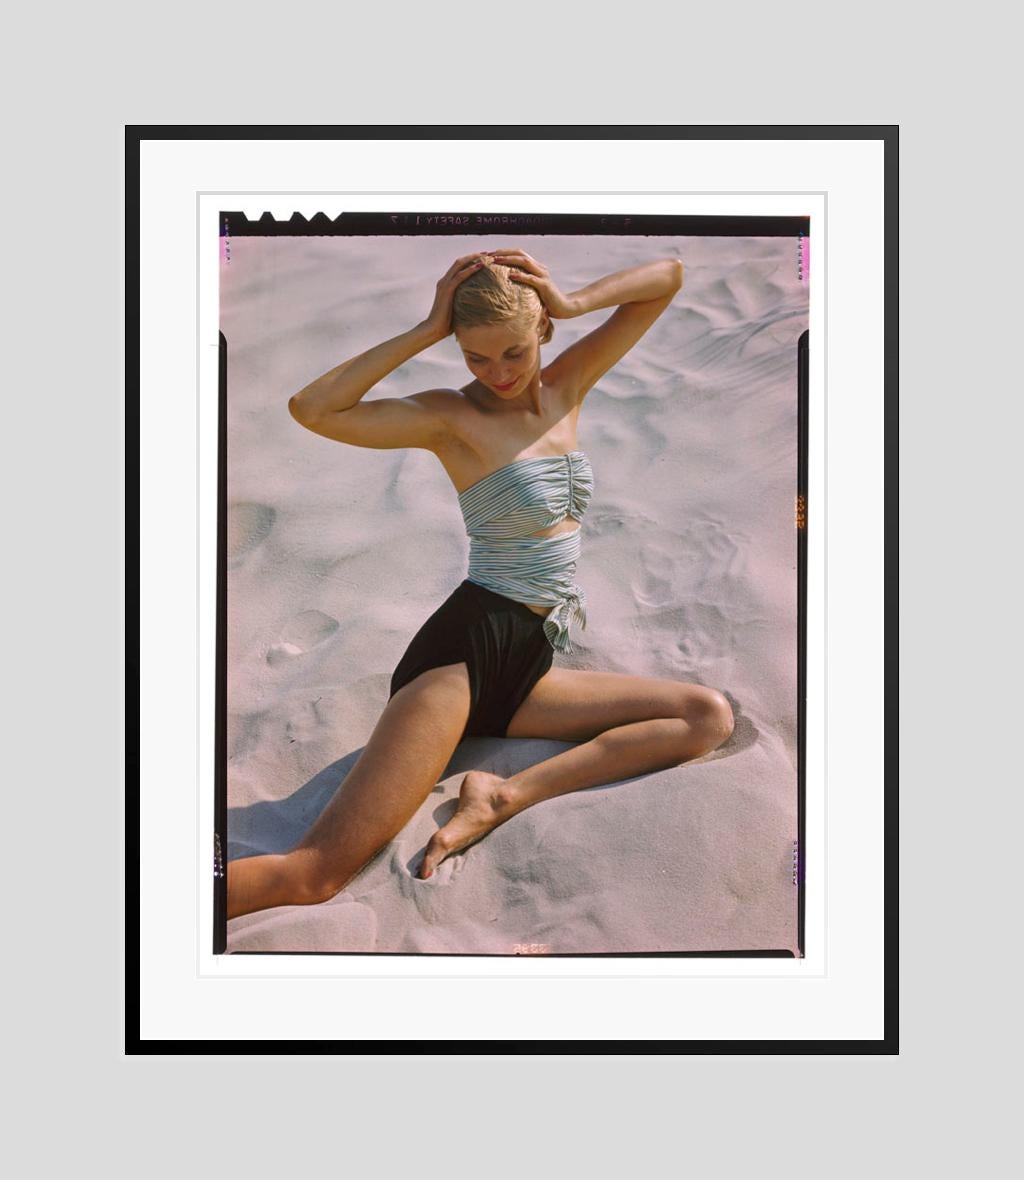 Mädchen am Strand 

1948

Shooting für Strandmode, 1948.

von Toni Frissell

16 x 20